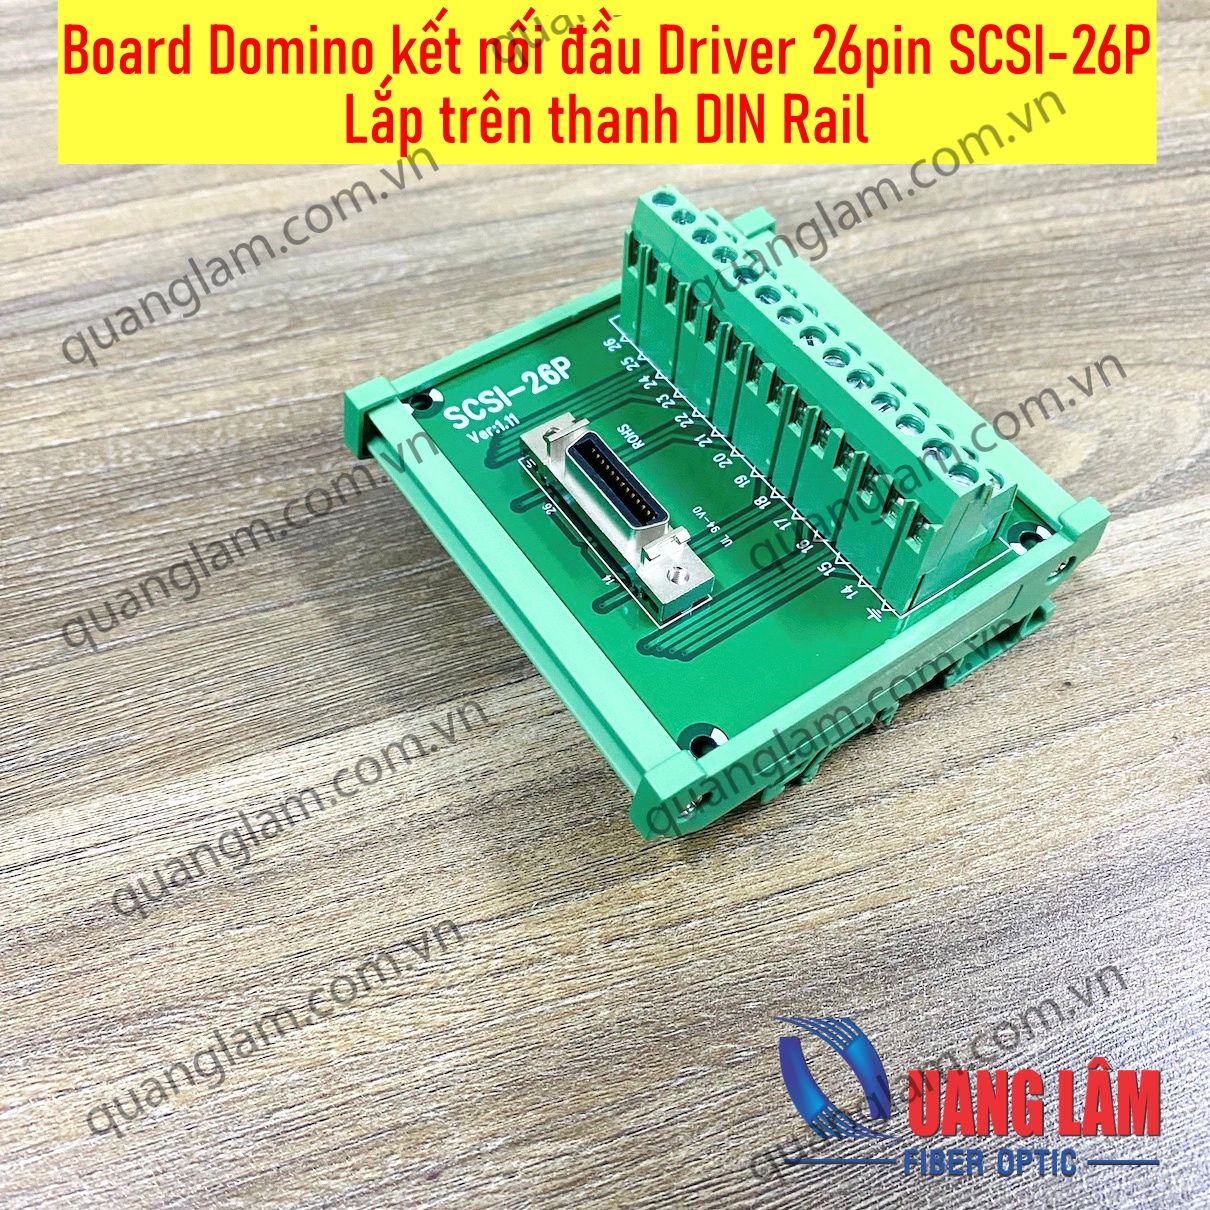 Board Terminal kết nối đầu Driver 26pin SCSI-26P - Lắp trên thanh DIN